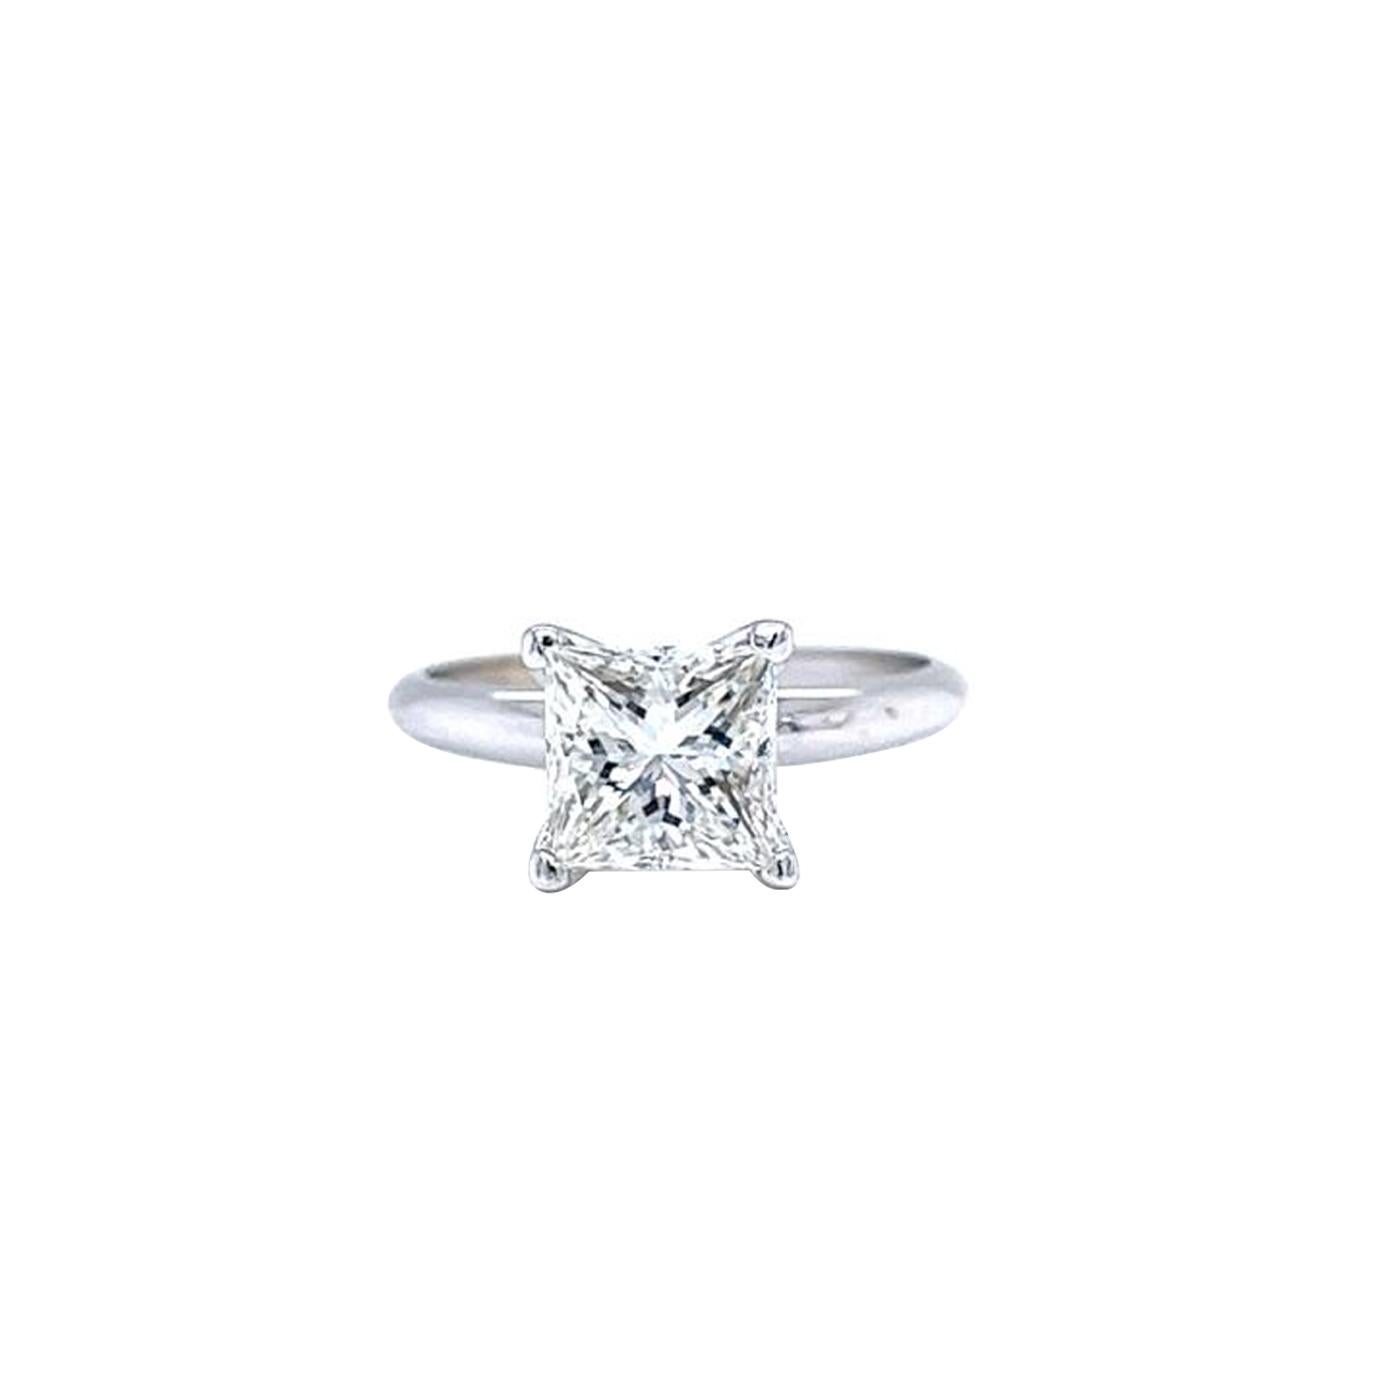 Cette jolie bague est ornée d'un diamant Princes Cut Tiffany Style de 2,01 carats en or blanc 14 carats et mesure 7,14 x 7,00 x 4,94 mm. Il est certifié par le GIA avec un très bon poli et une bonne symétrie et présente une taille Brilliante carrée